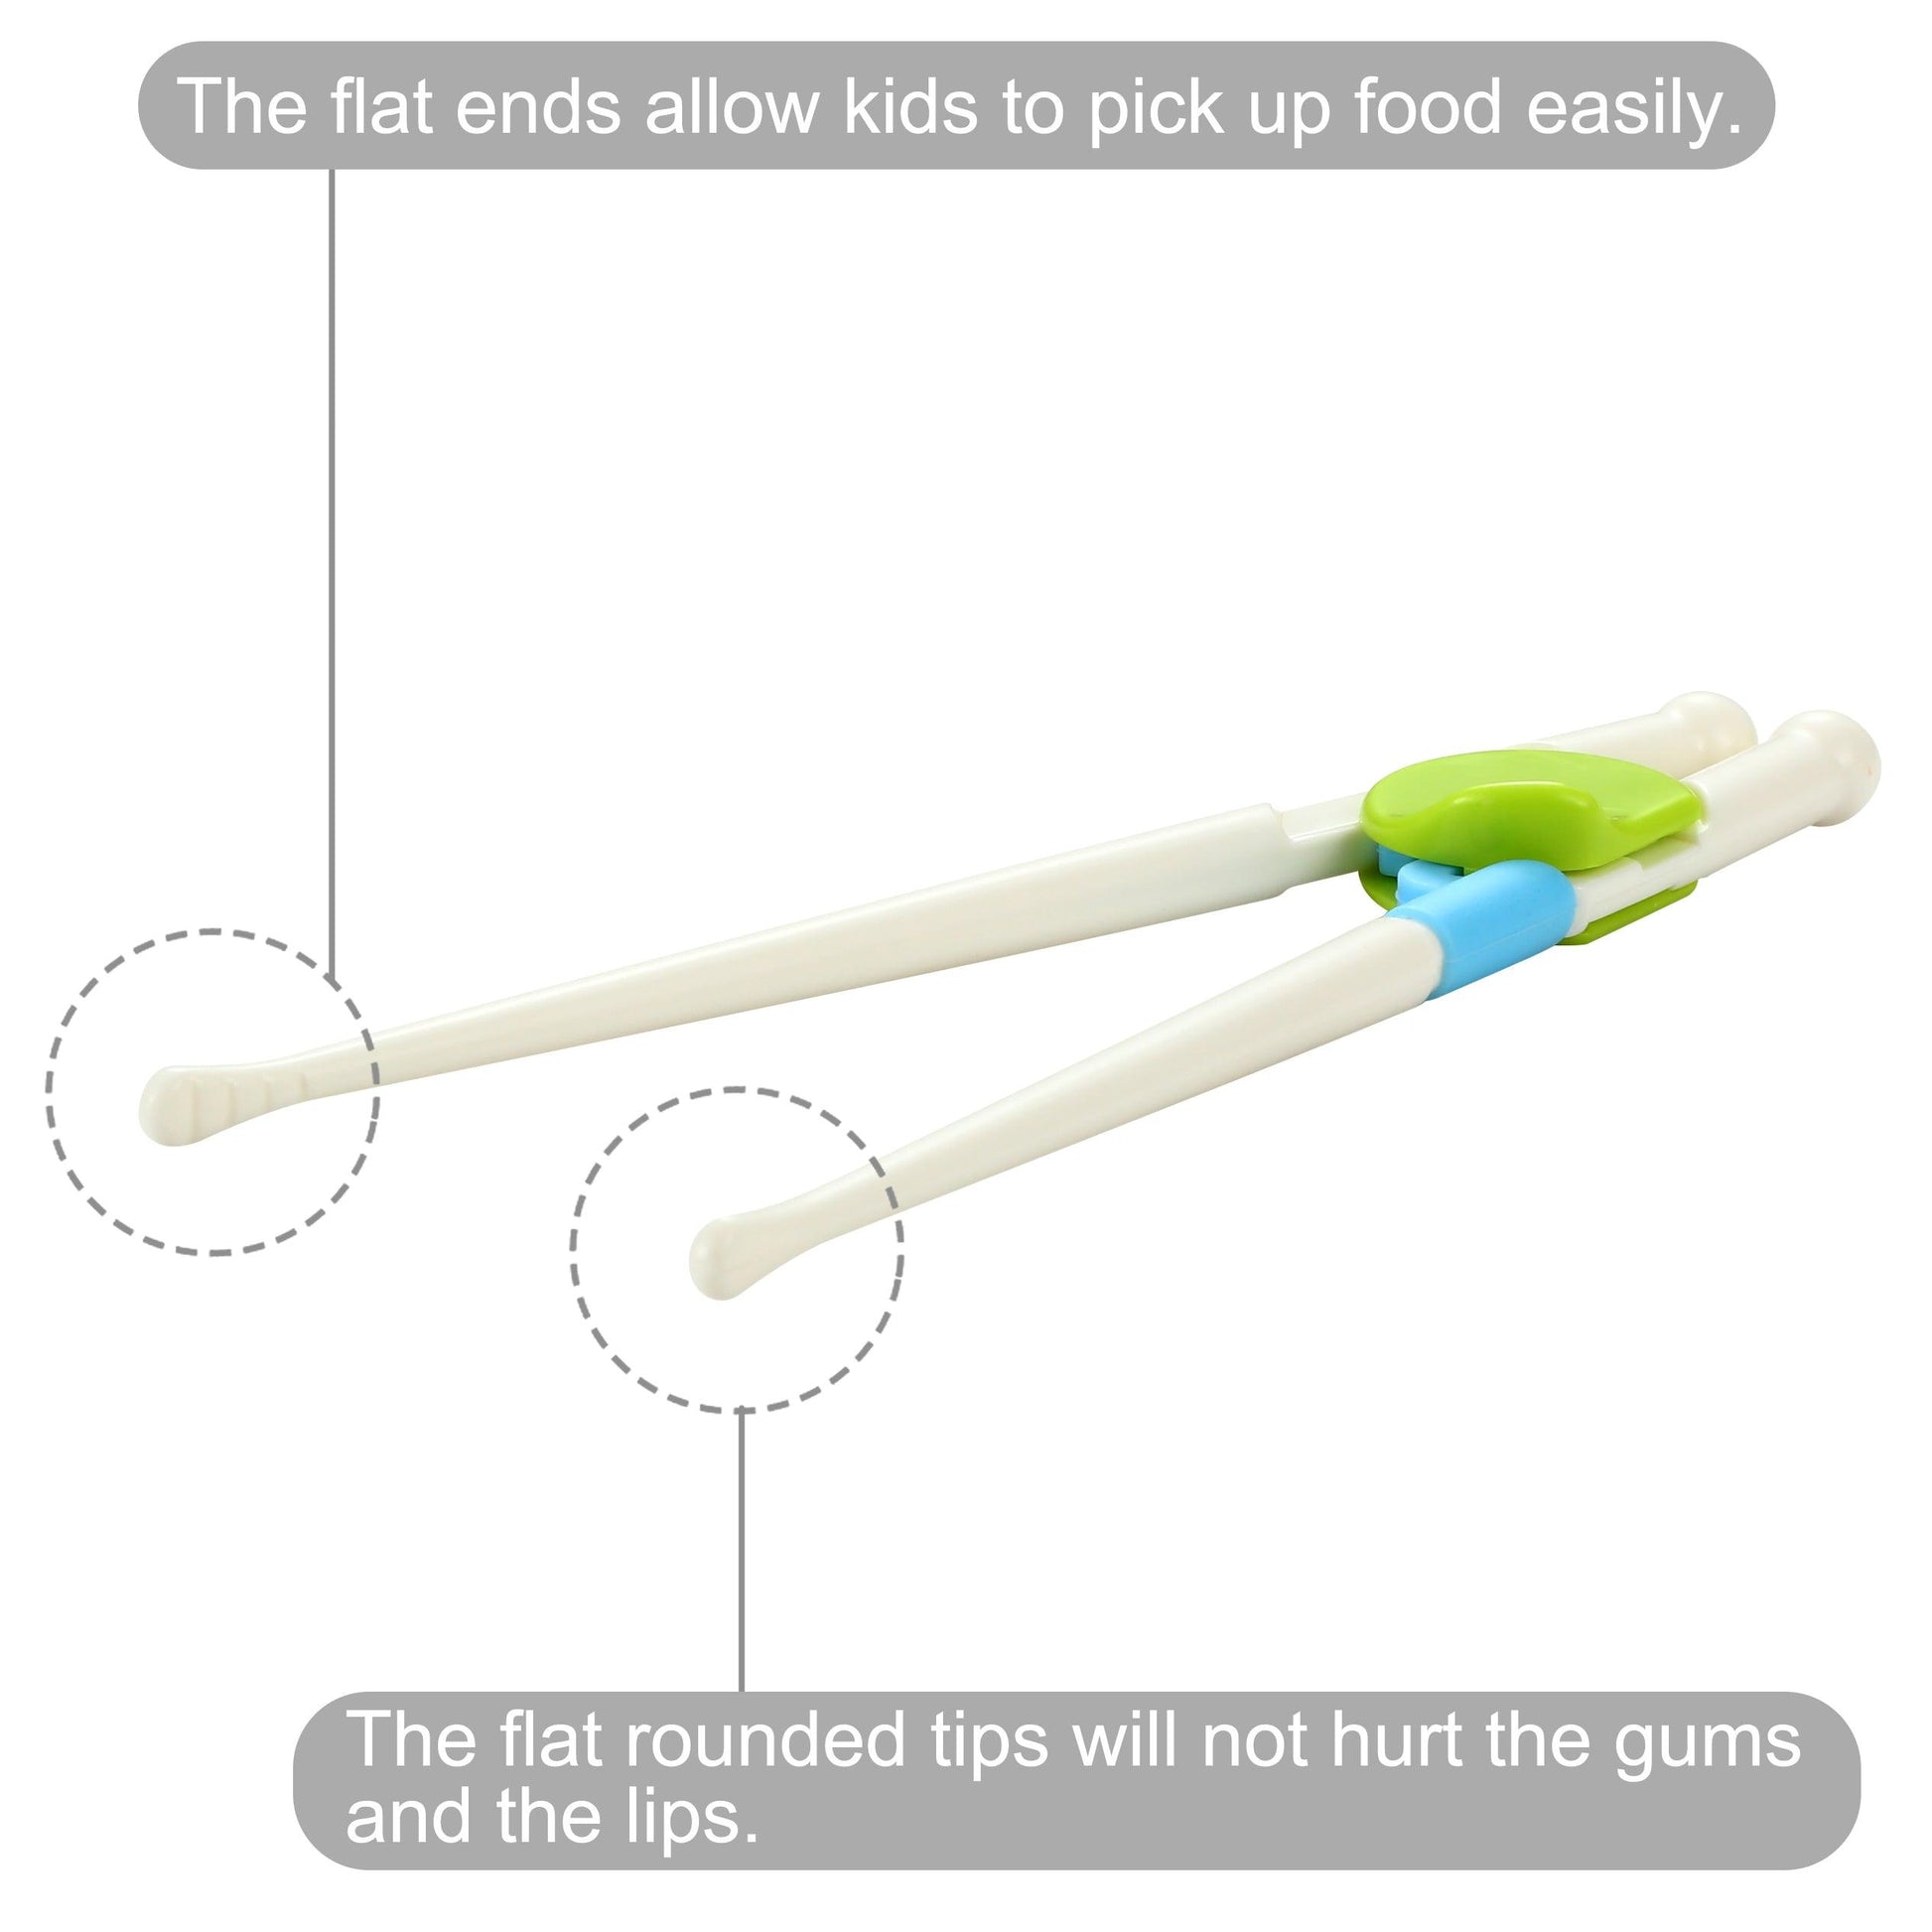 AURORA on X: Chopsticks for children are a much safer way to